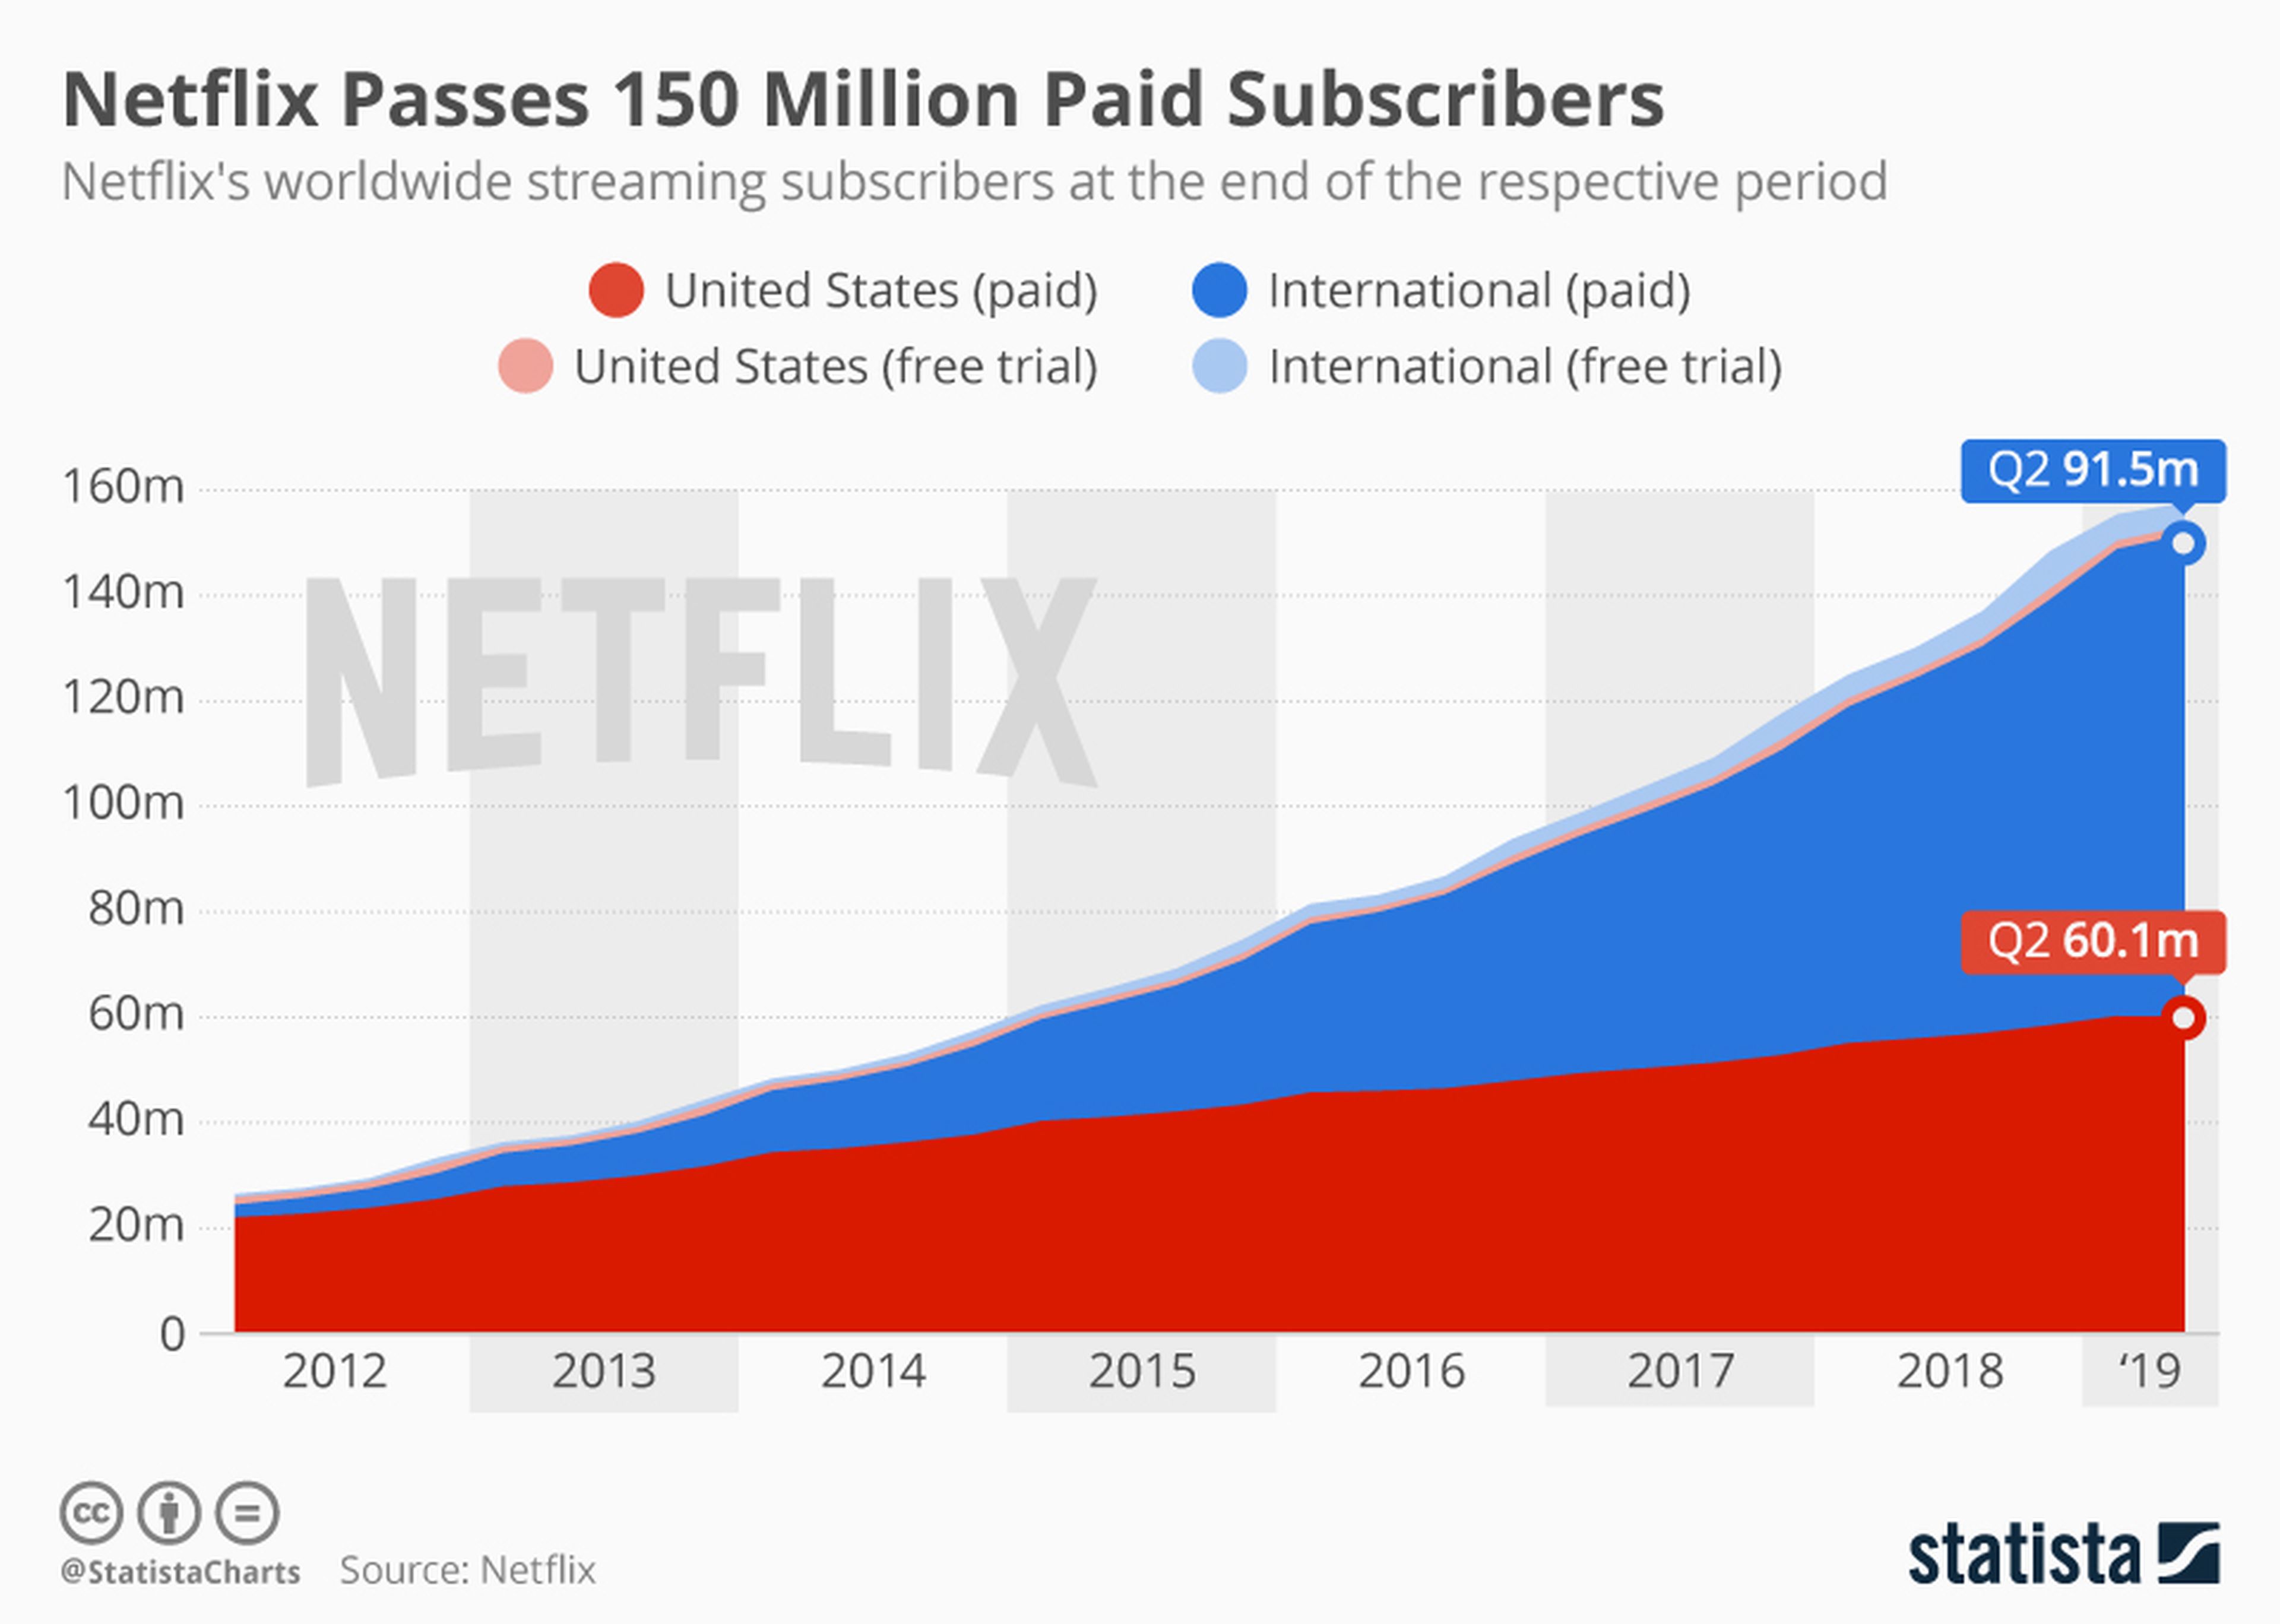 Evolución de suscriptores de Netflix desde el año 2012